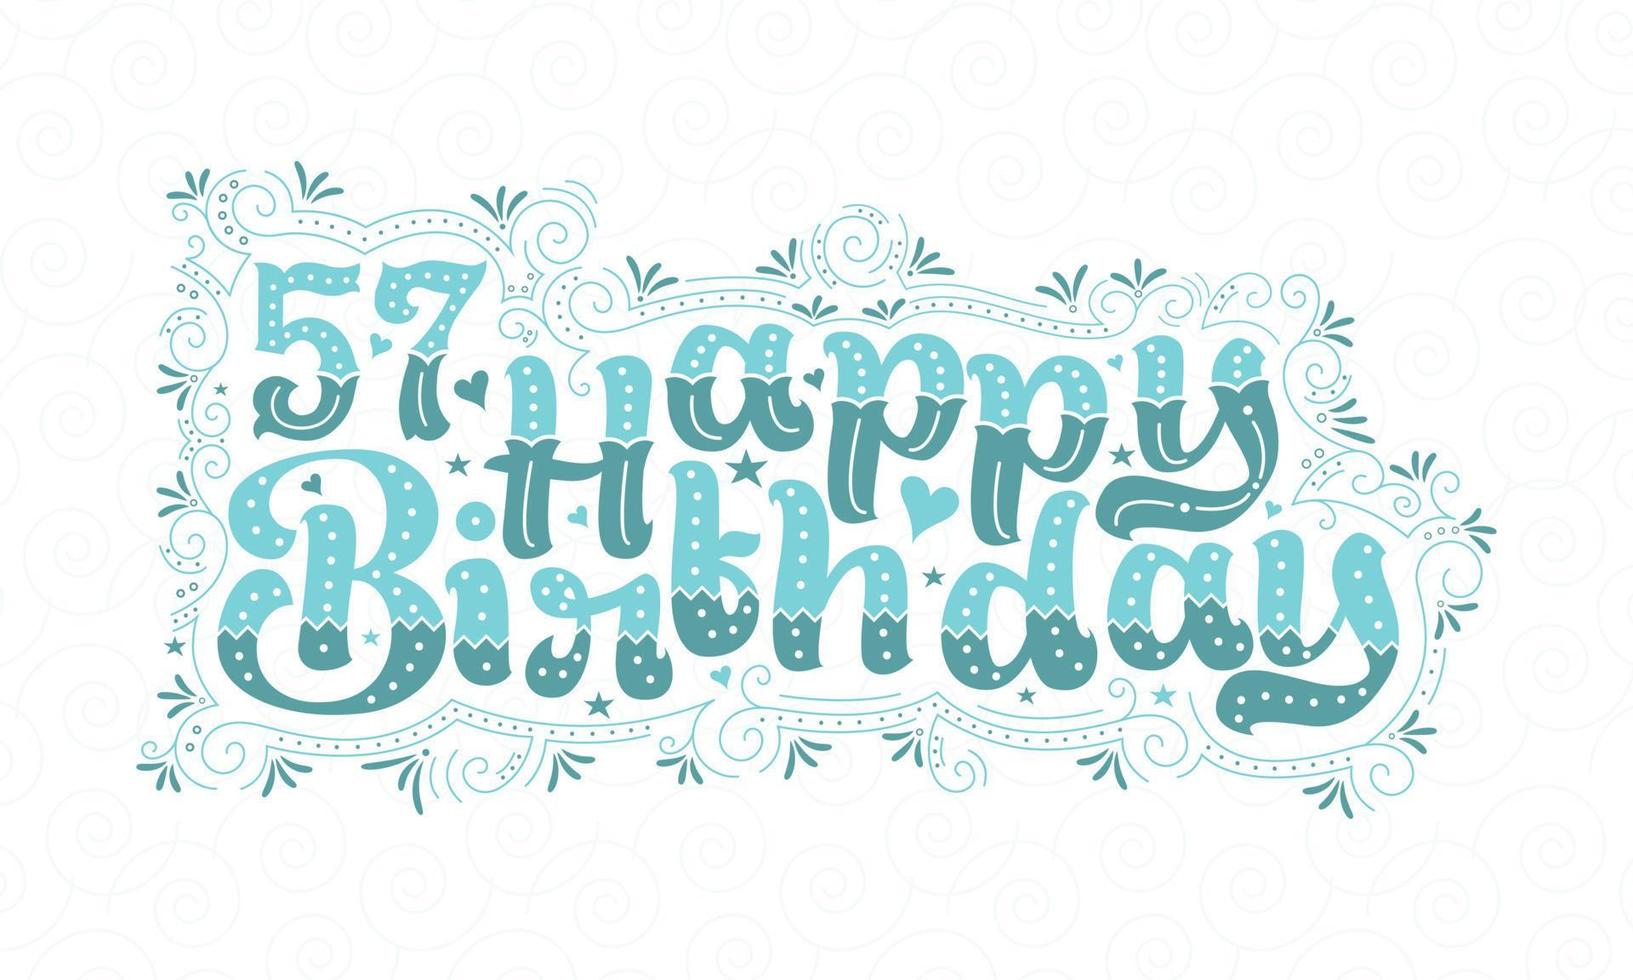 57. alles Gute zum Geburtstag Schriftzug, 57 Jahre Geburtstag schönes Typografie-Design mit Aquapunkten, Linien und Blättern. vektor